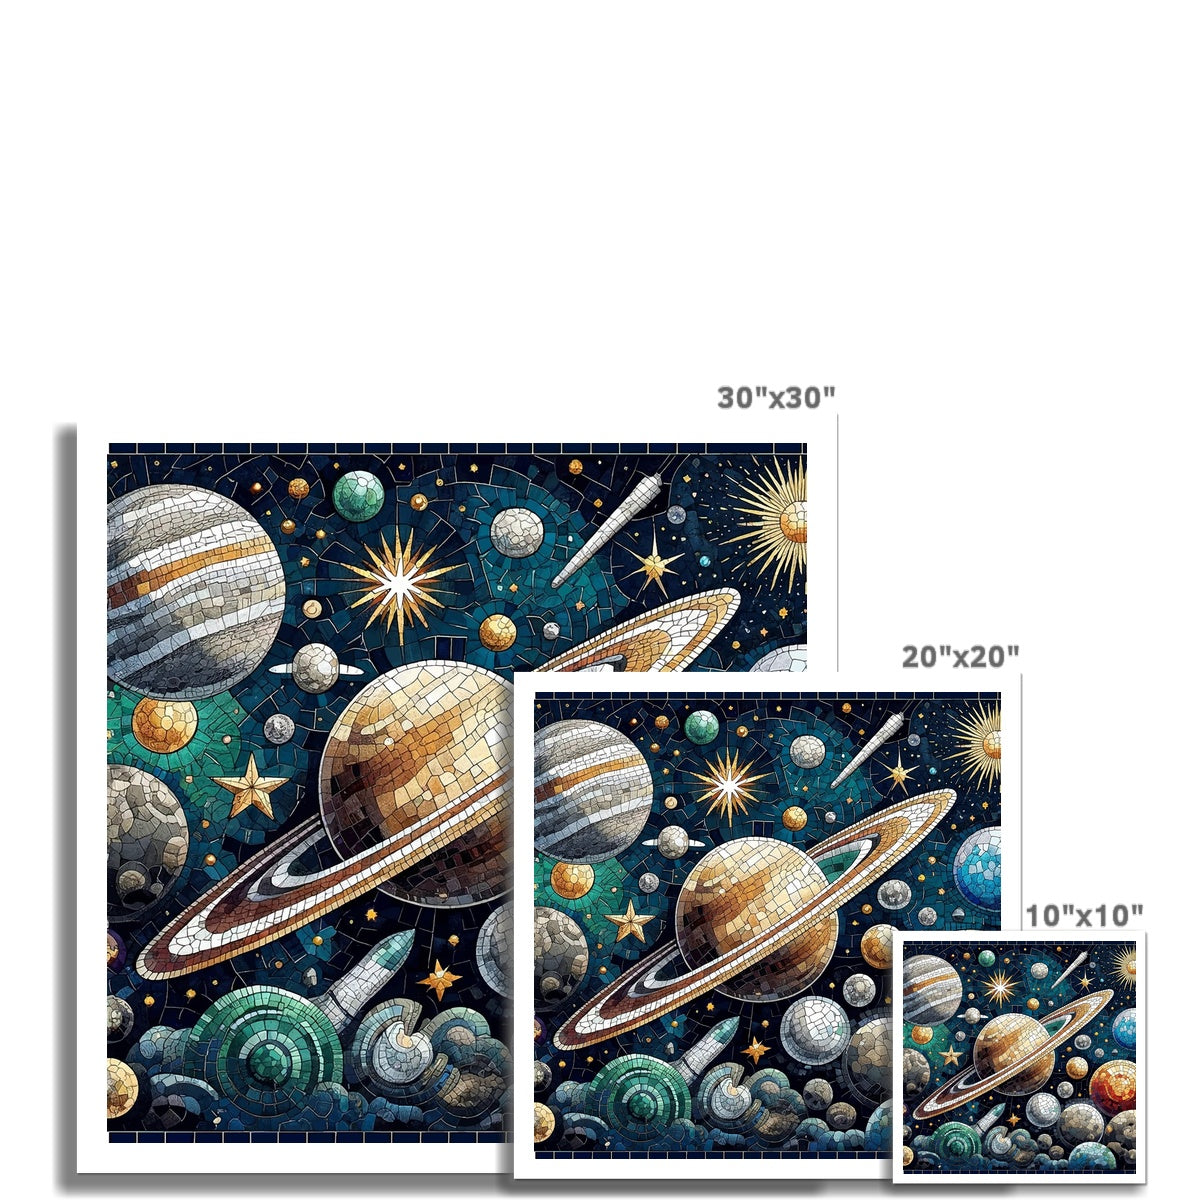 Space Mosaic Hahnemühle German Etching Print